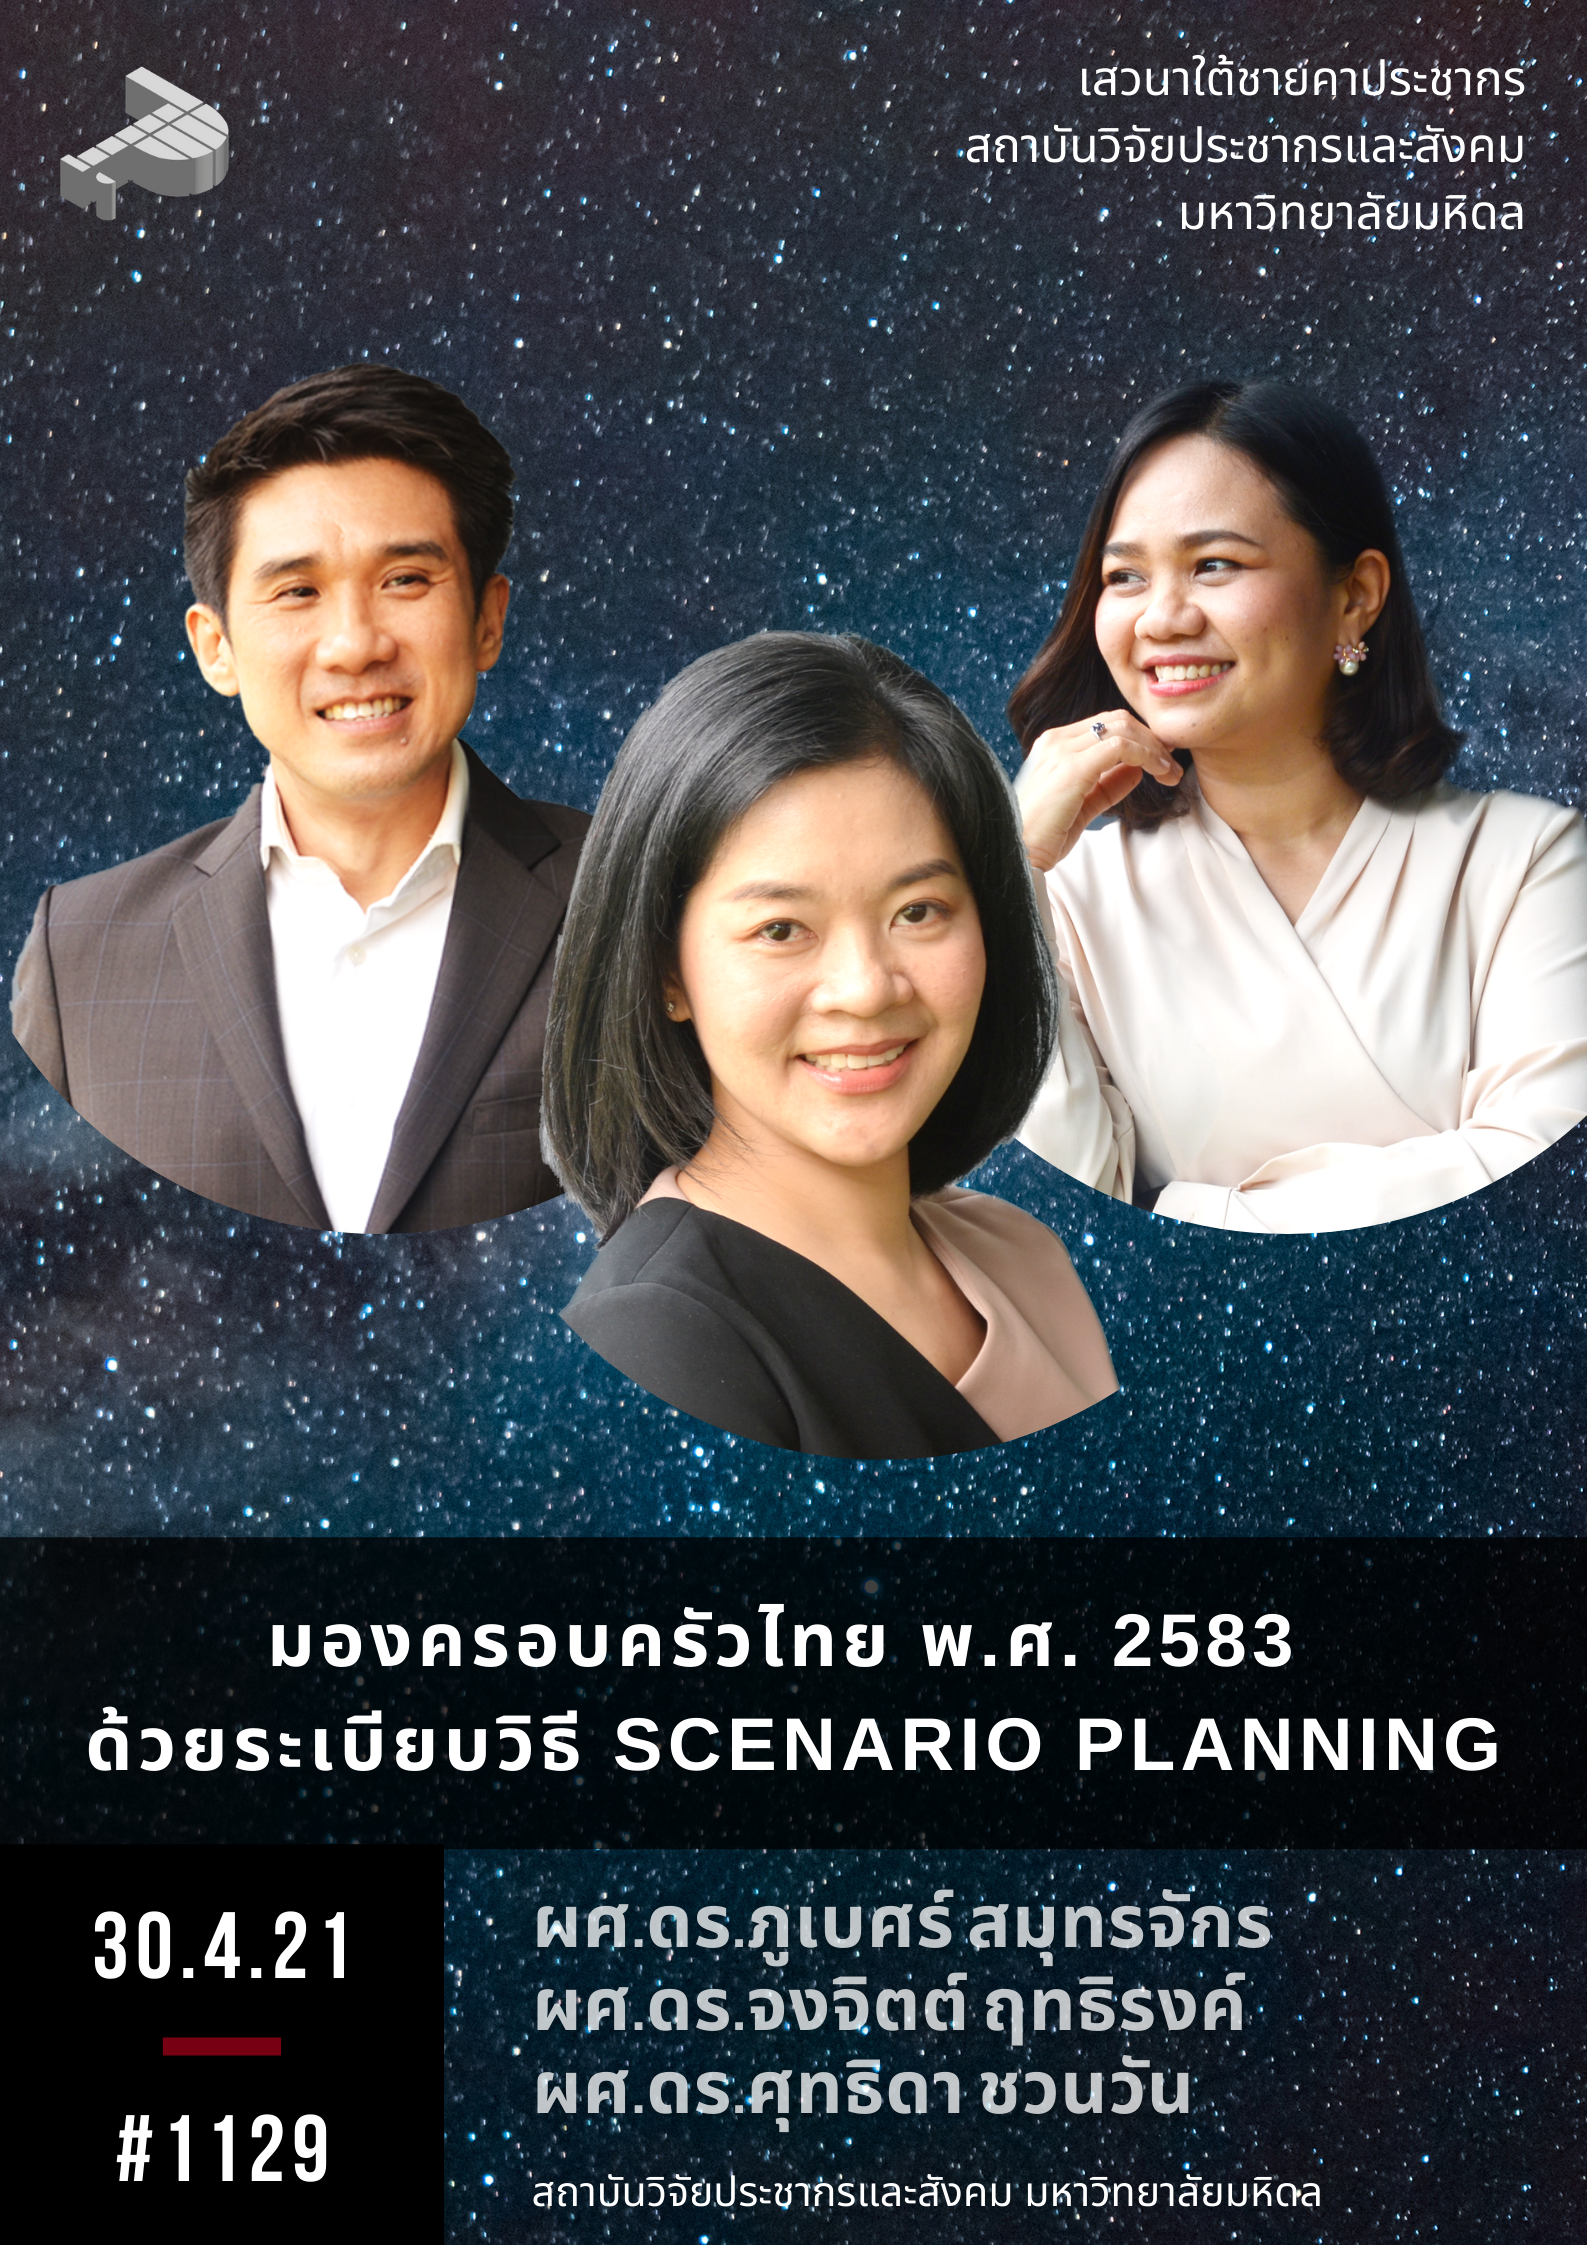 มองครอบครัวไทย พ.ศ. 2583 ด้วยระเบียบวิธี Scenario Planning